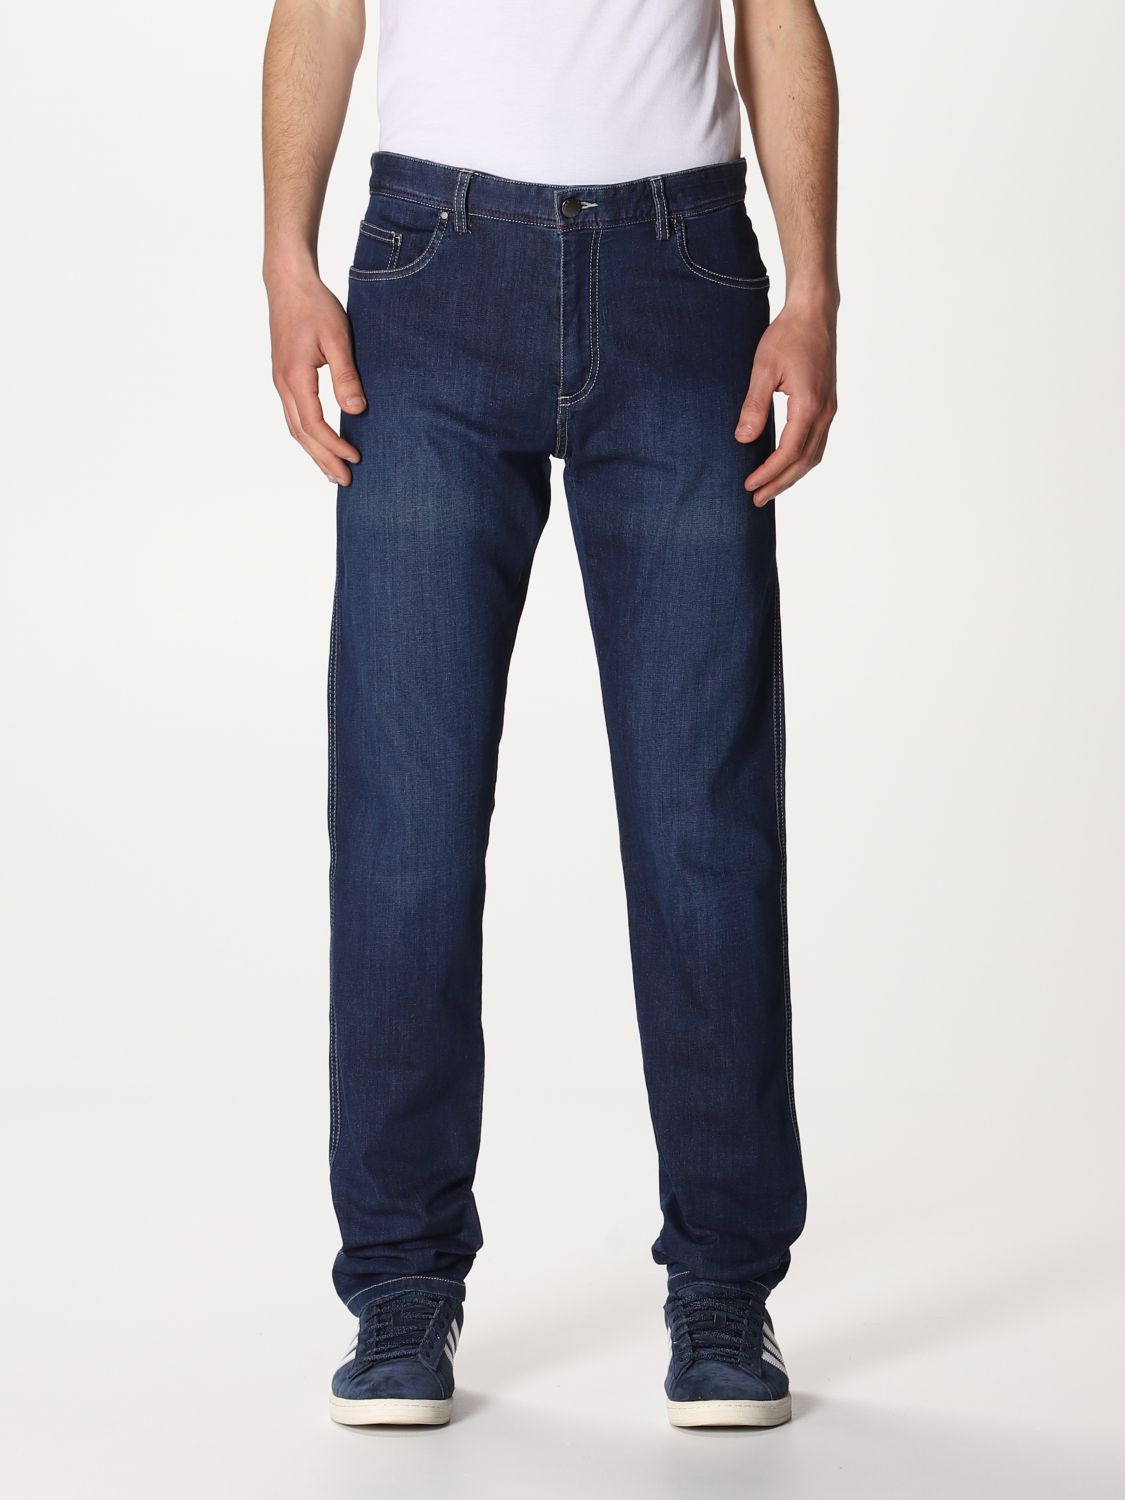 PAUL & SHARK: 5-pocket jeans - Denim | PAUL & SHARK jeans P19P4020 ...